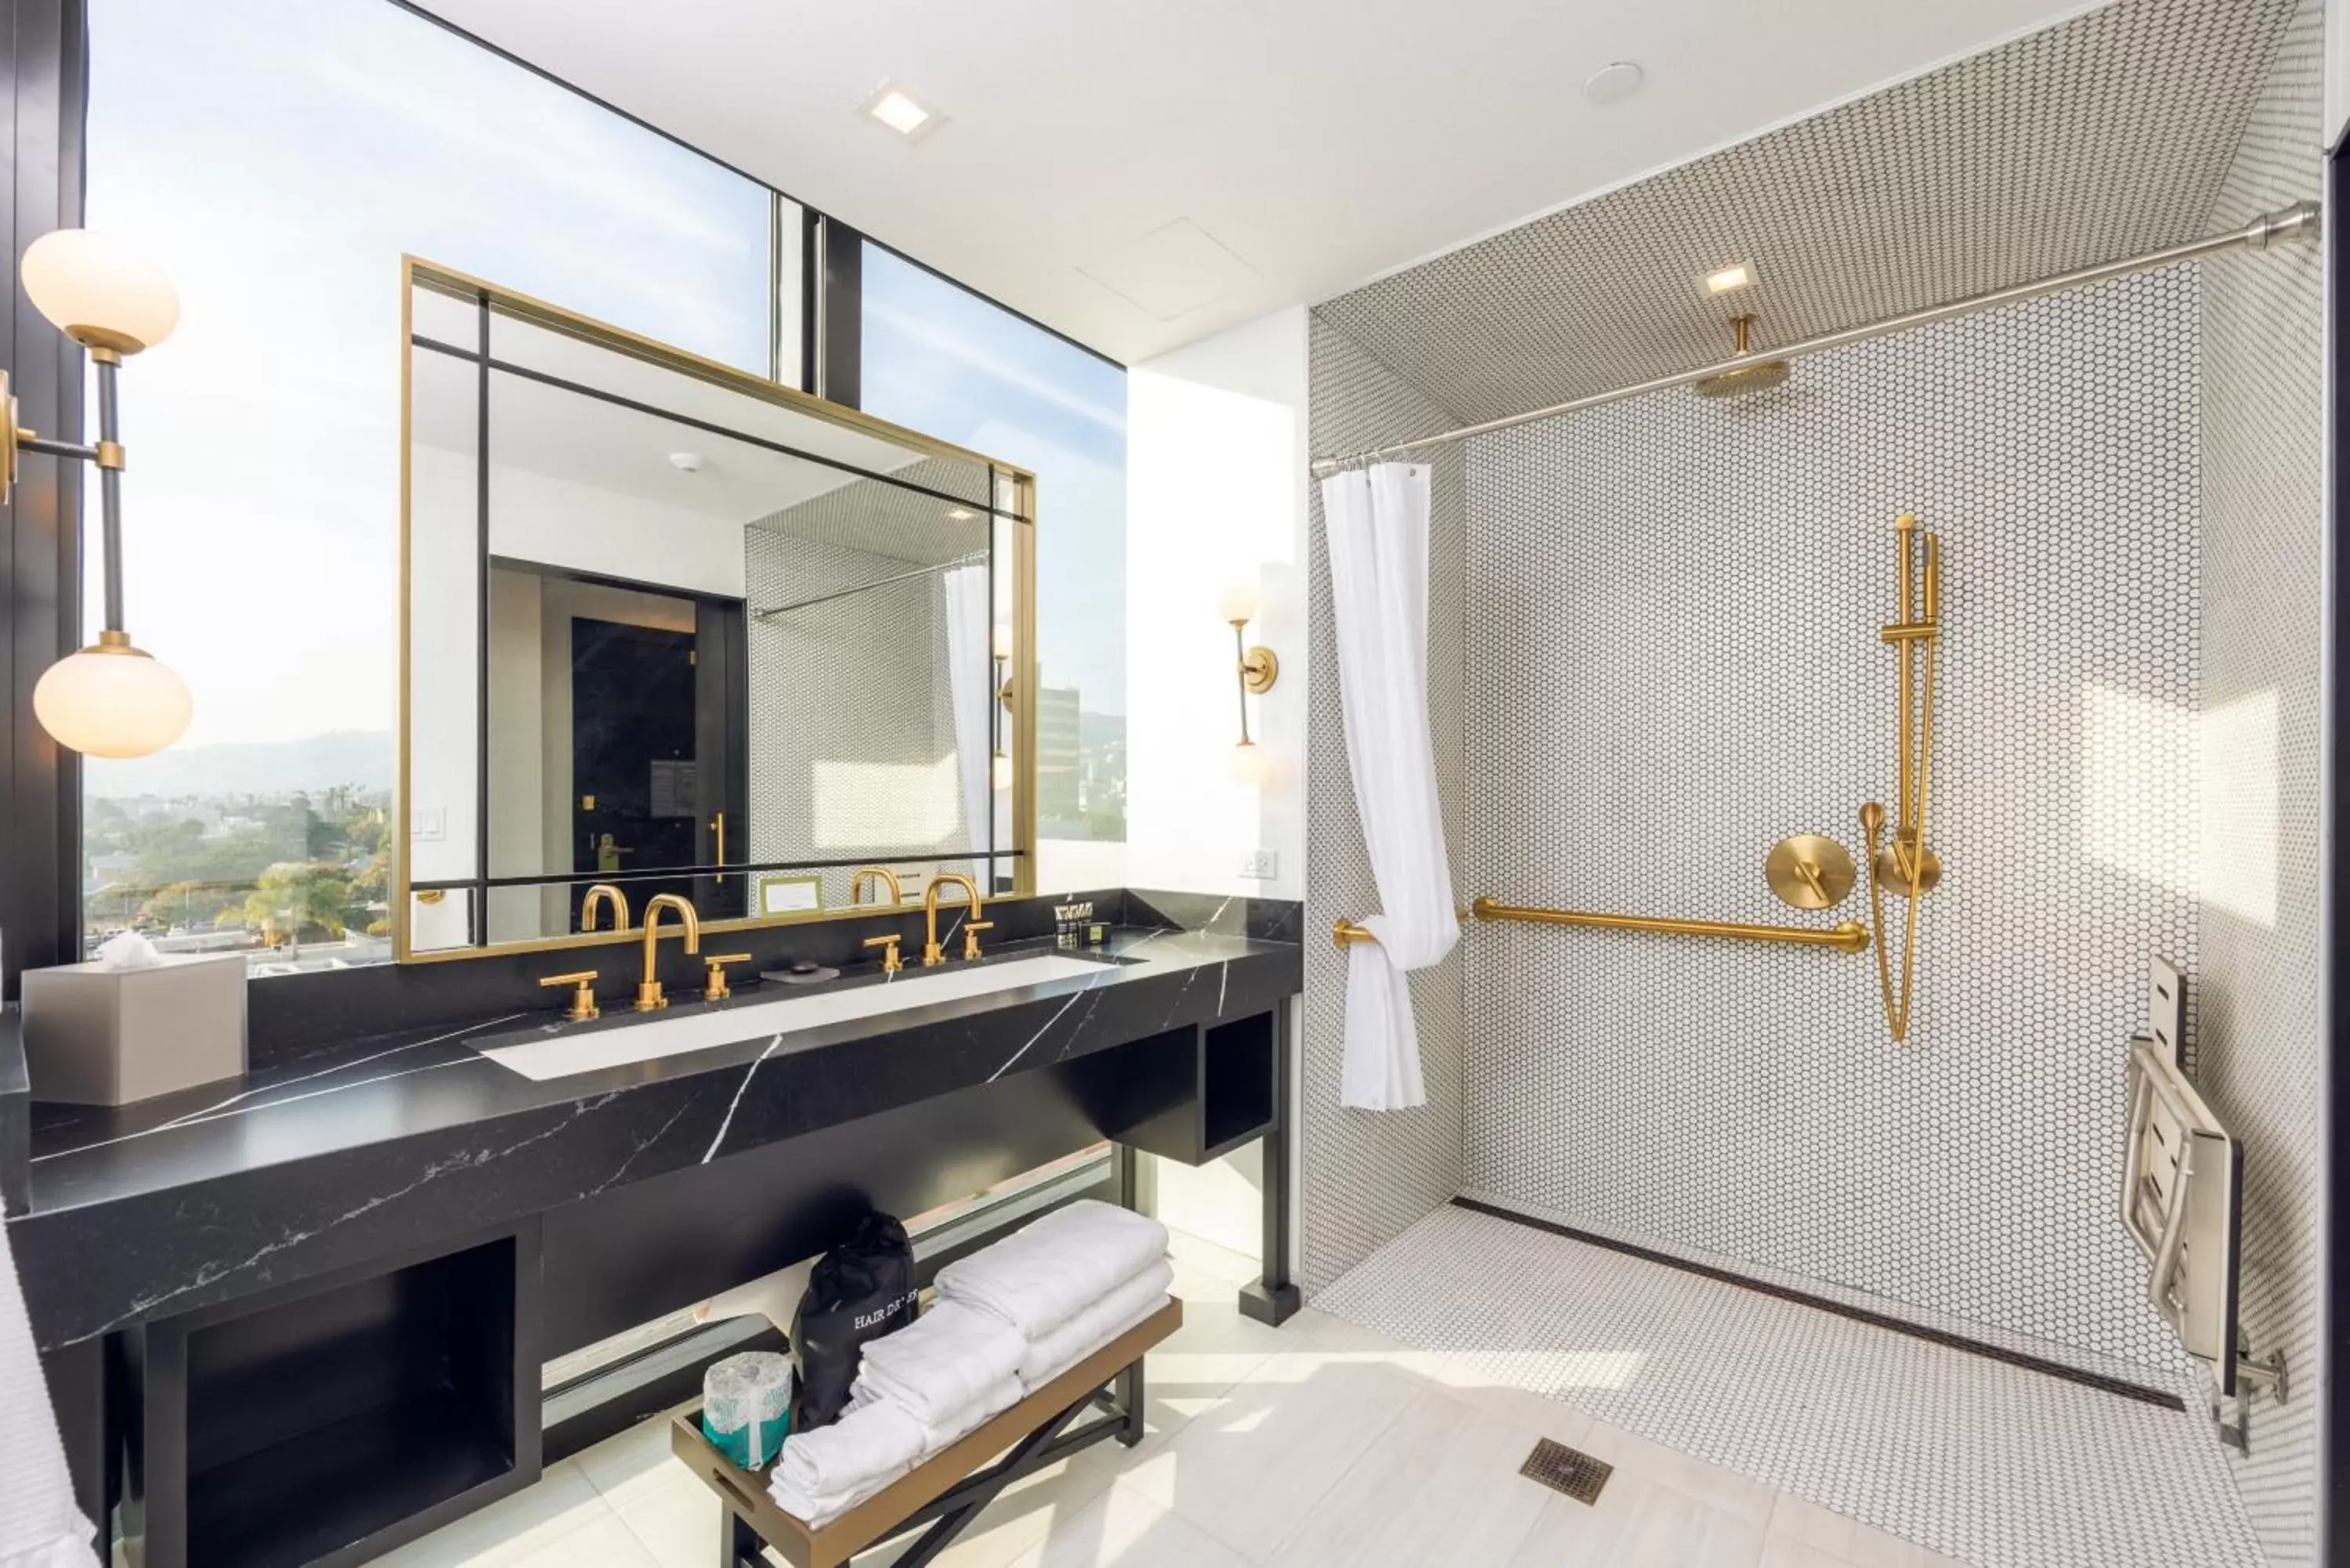 Bathroom in The Godfrey Hotel Hollywood